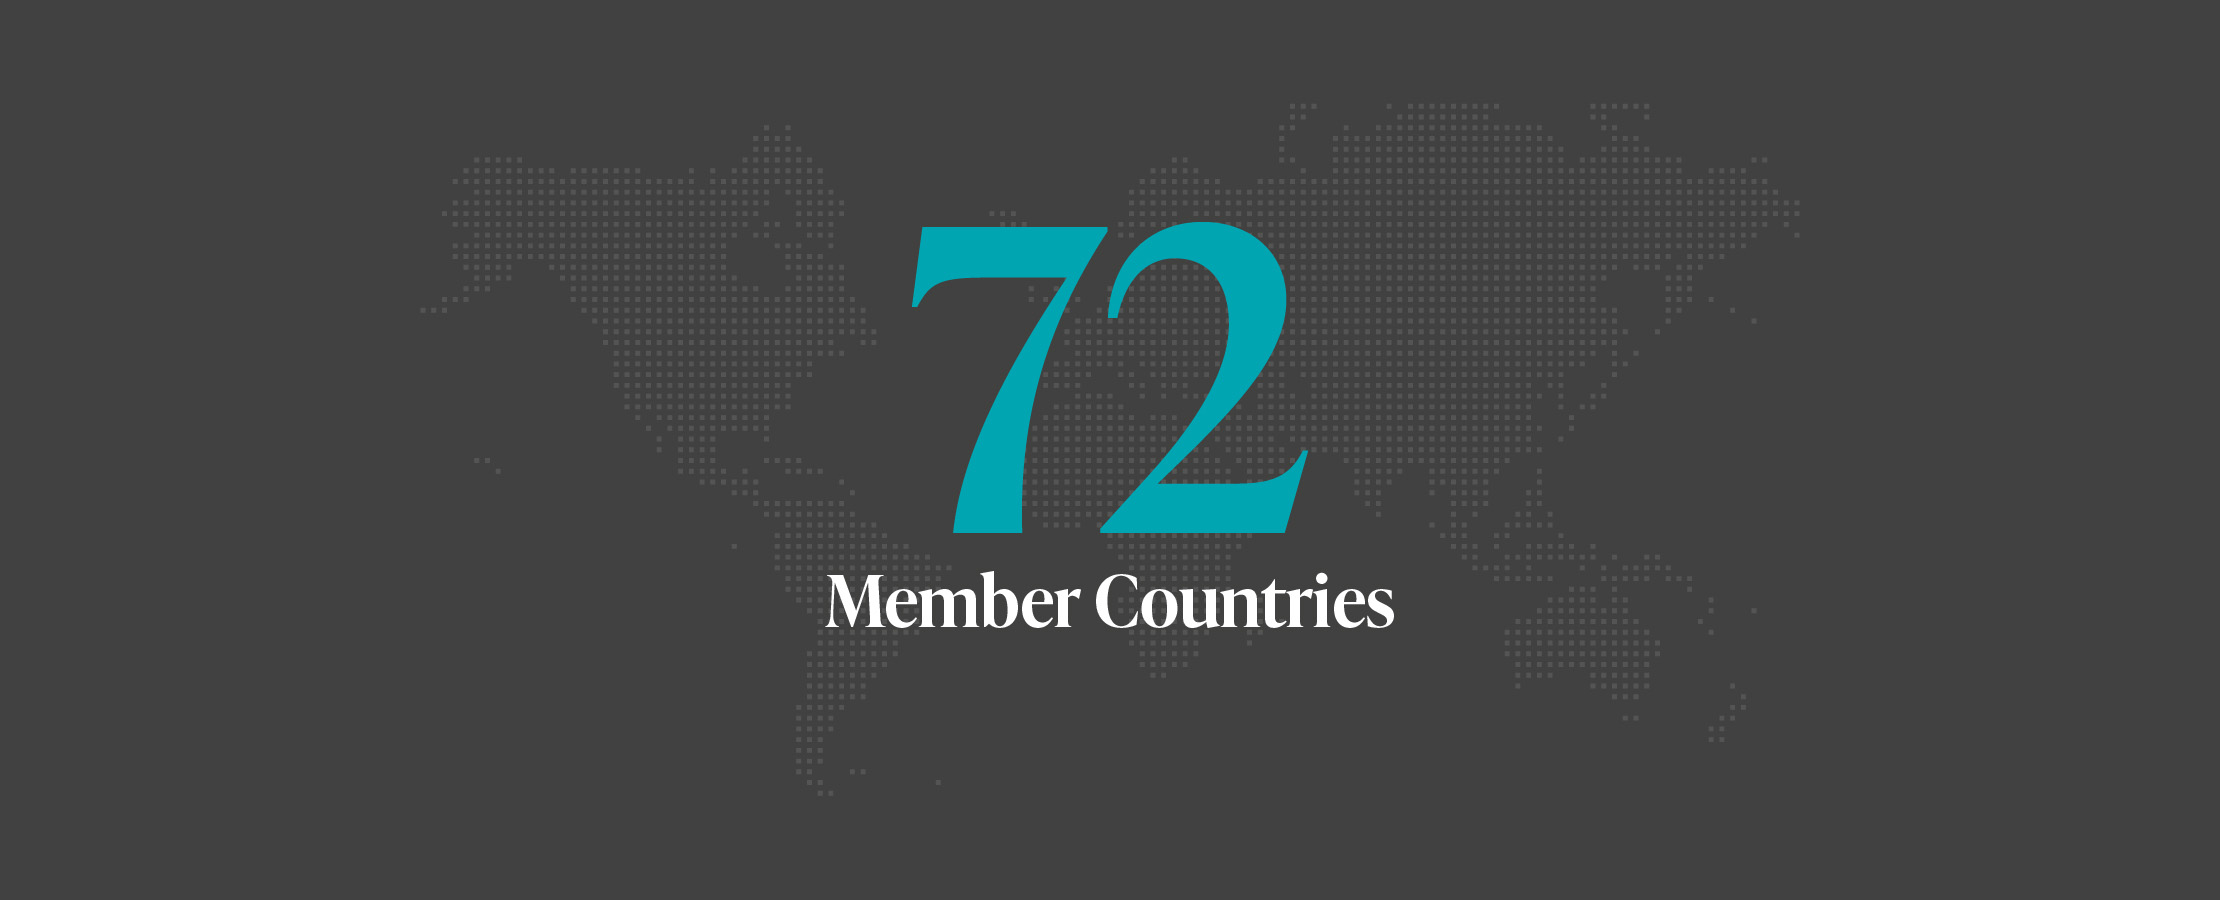 72 Member Countries